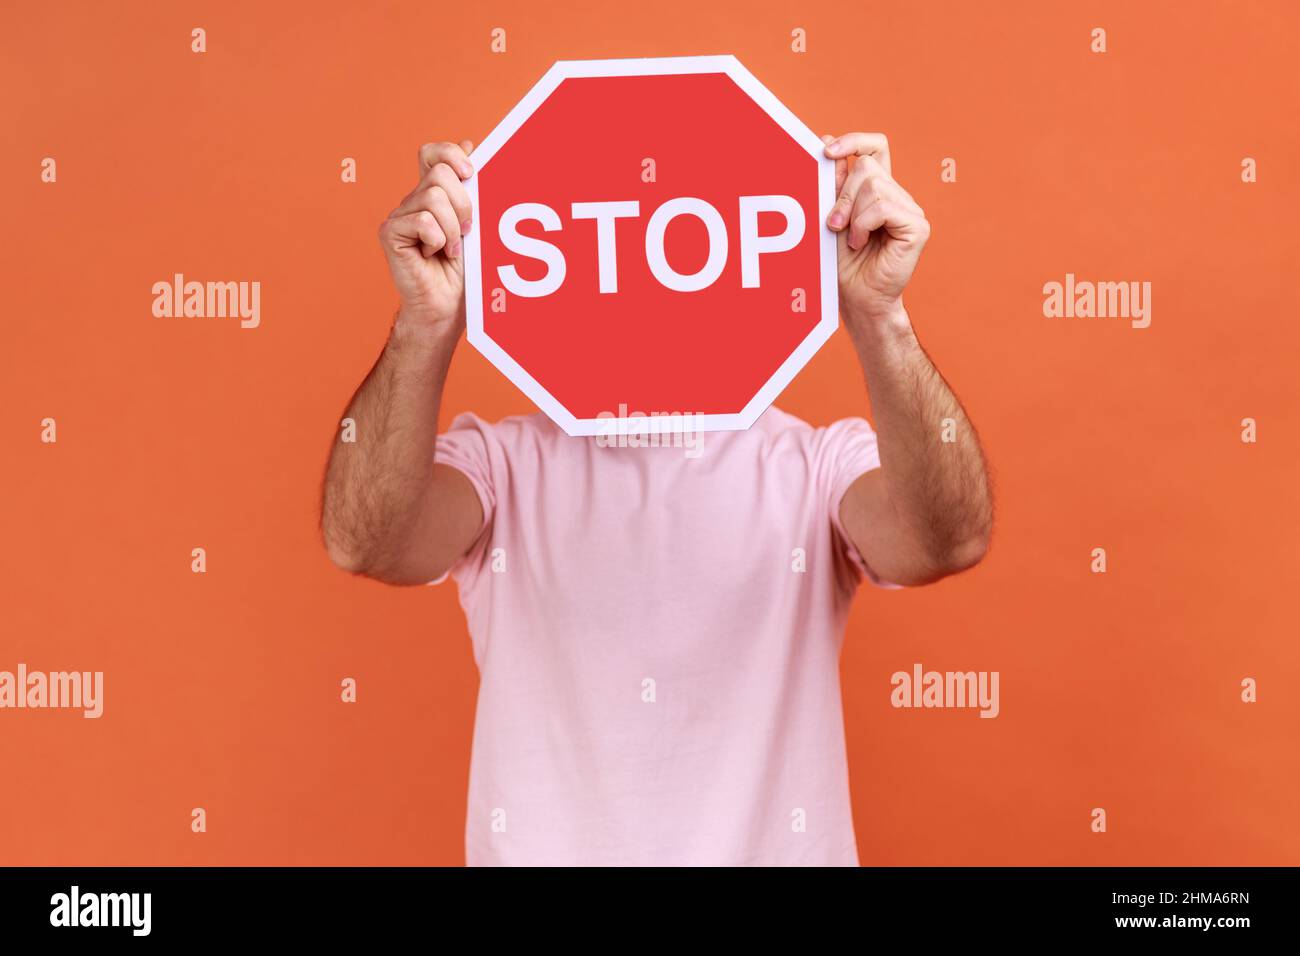 Portrait de l'homme couvrant le visage avec le symbole Stop, anonyme tenant le panneau de signalisation rouge, avertissement à partir, concept d'interdiction, portant un T-shirt rose. Studio d'intérieur isolé sur fond orange. Banque D'Images